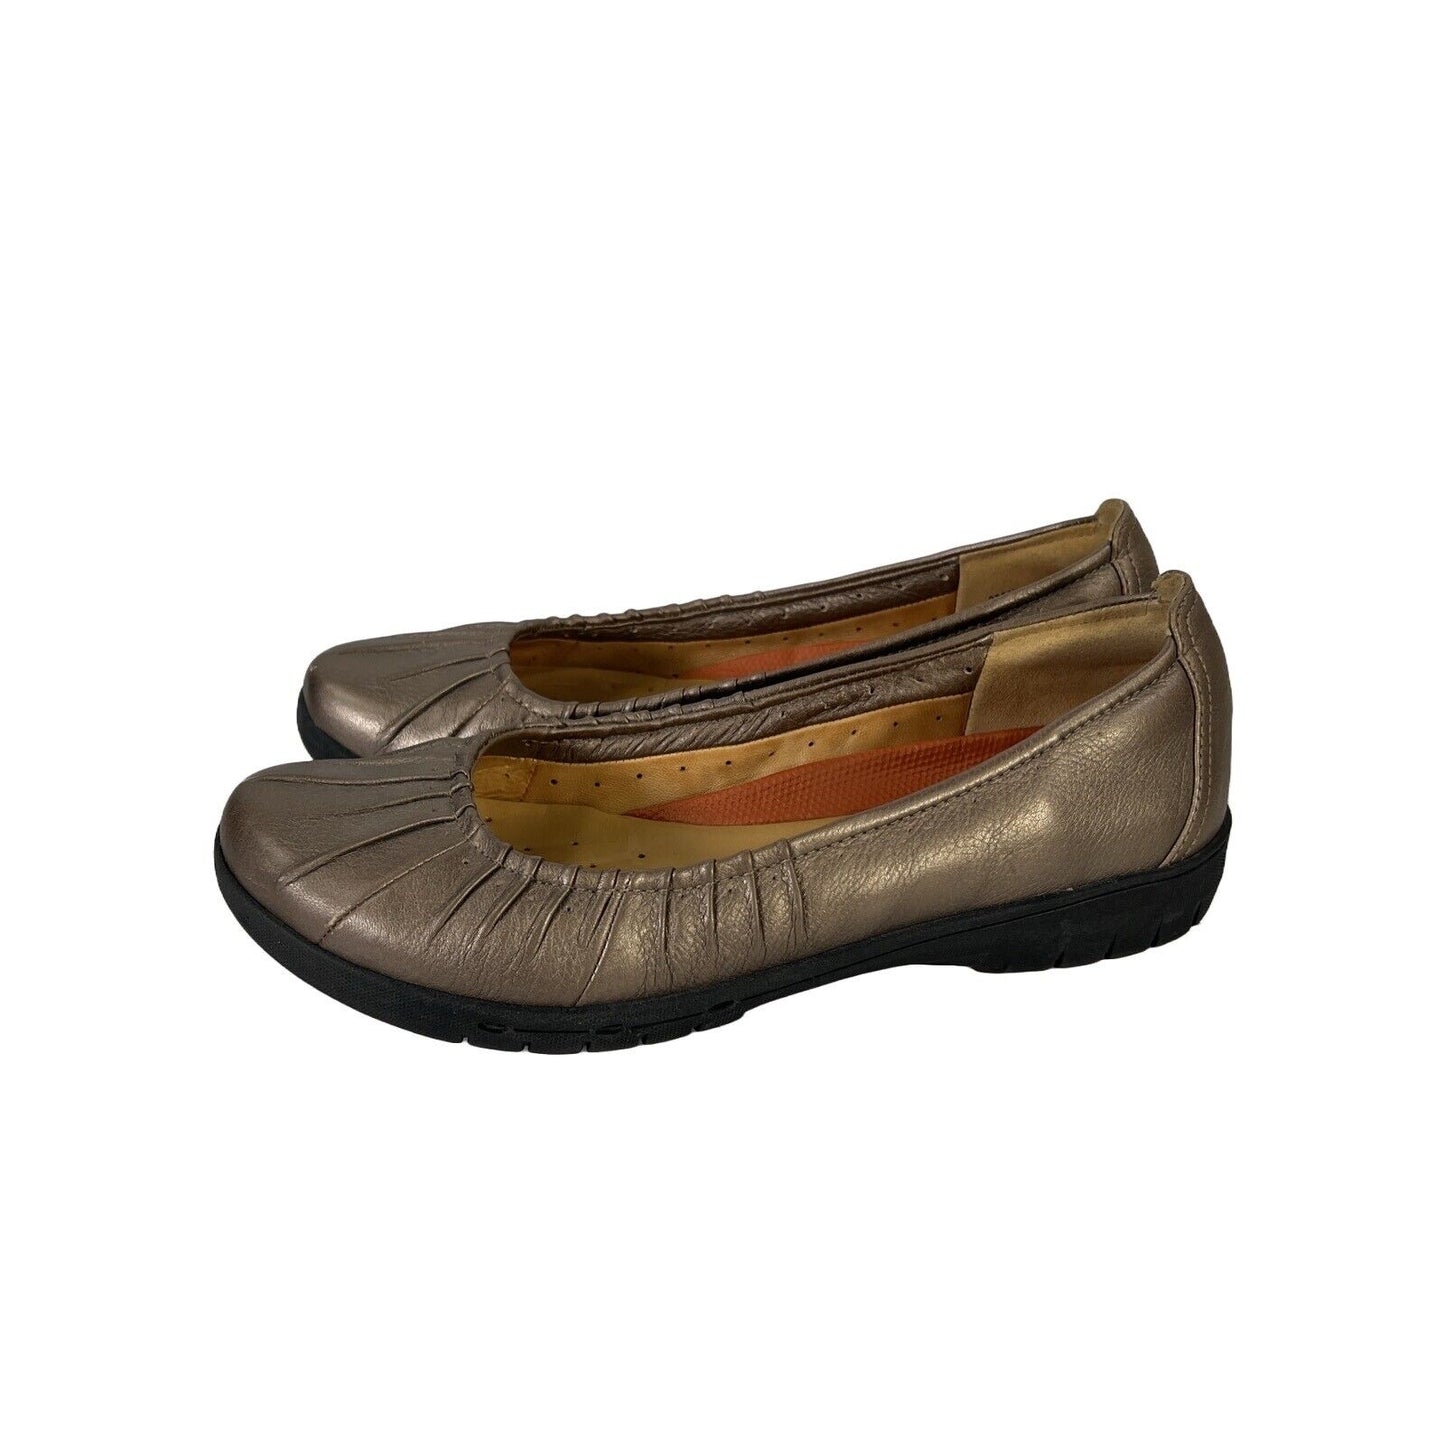 Clarks Unstructured Zapatos planos sin cordones de cuero marrón/bronce para mujer - 8